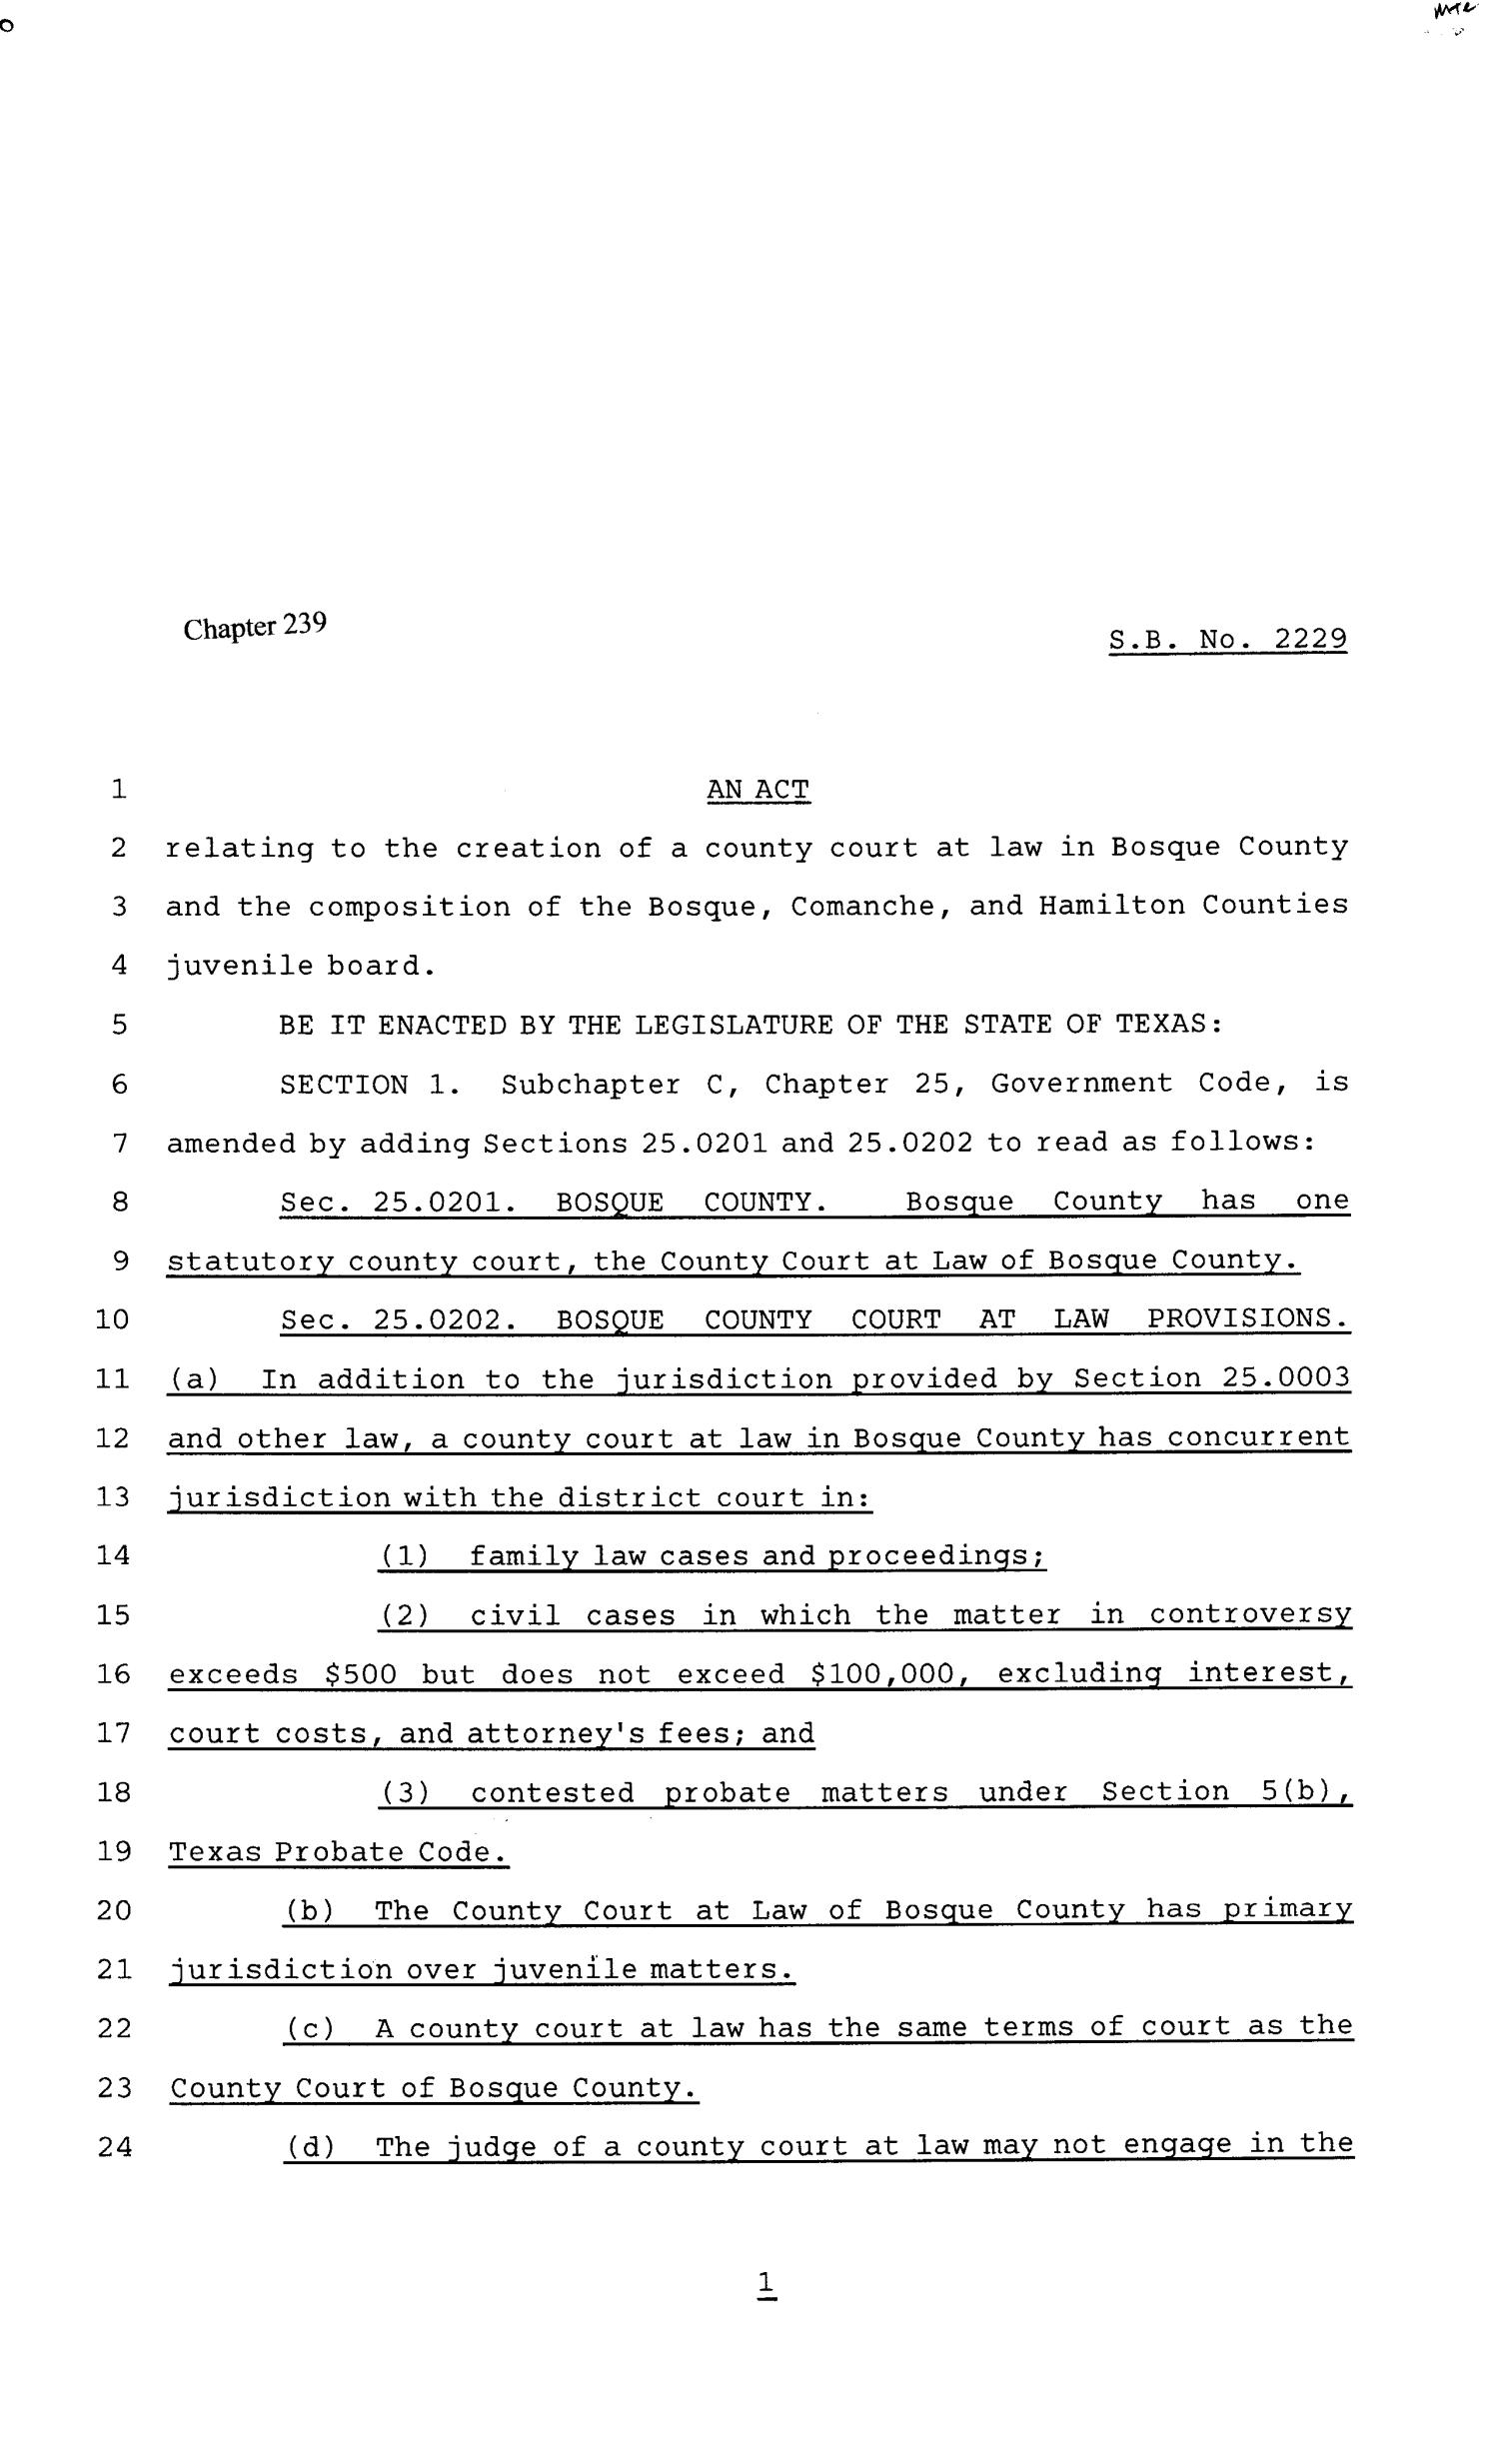 81st Texas Legislature, Senate Bill 2229, Chapter 239
                                                
                                                    [Sequence #]: 1 of 3
                                                